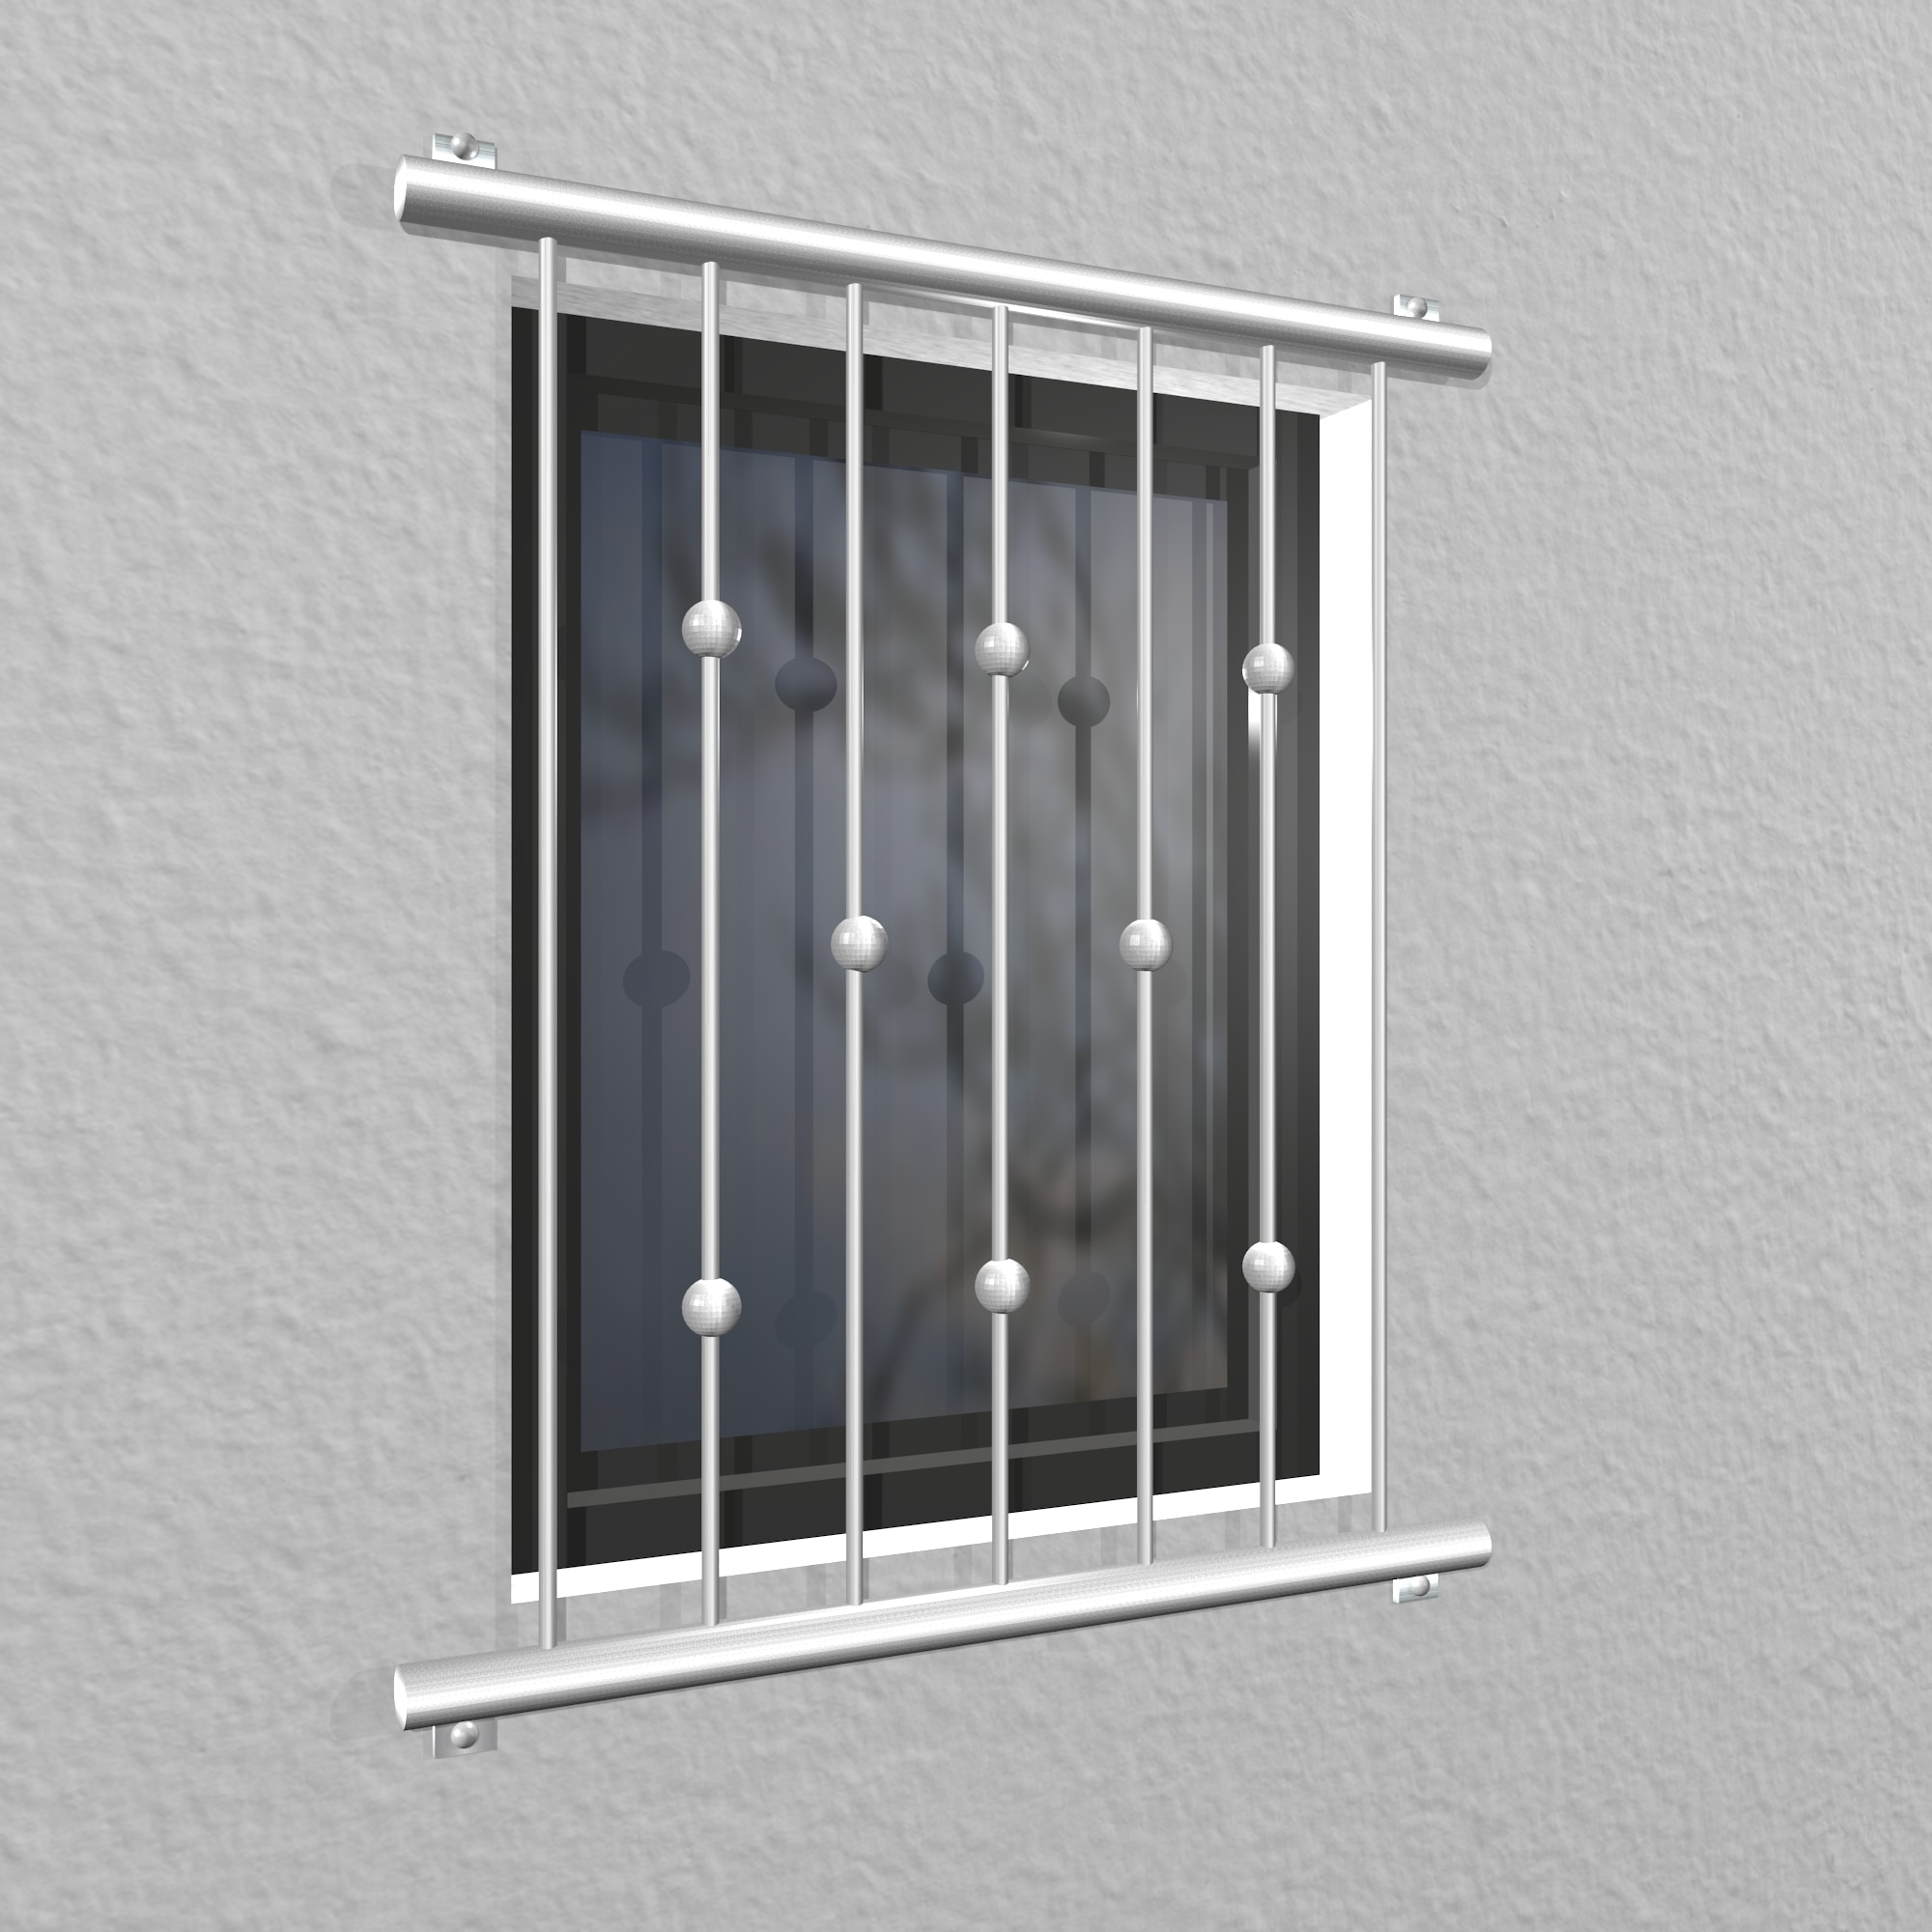 Grille de défense pour fenêtres en acier inoxydable billes décalées 2